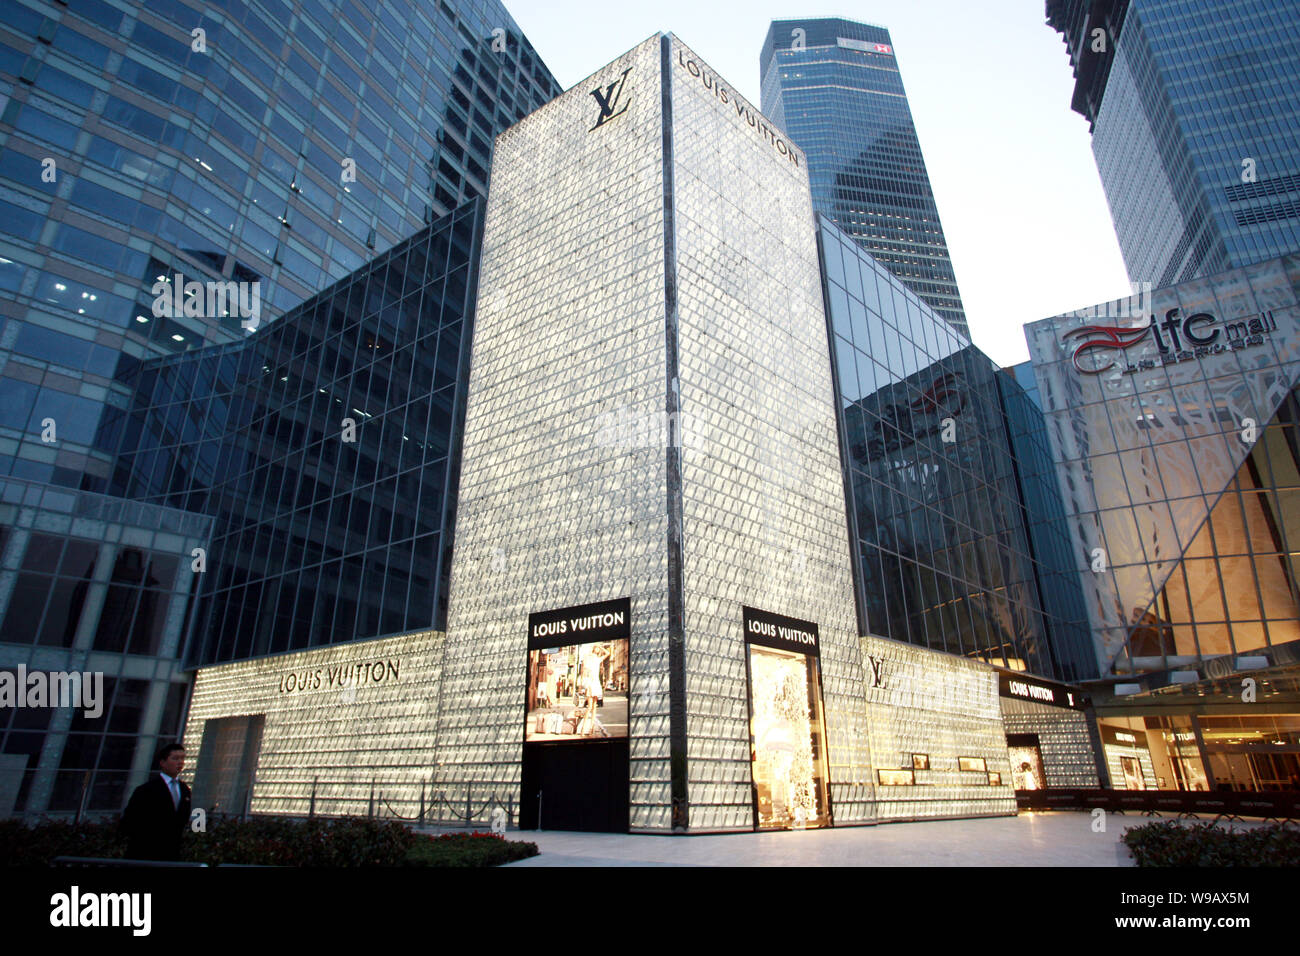 Vue de la Louis Vuitton store dans le quartier financier de Lujiazui à Pudong, Shanghai, Chine, le 28 avril 2010. La marque de luxe française Louis Vuitton ouvrir Banque D'Images